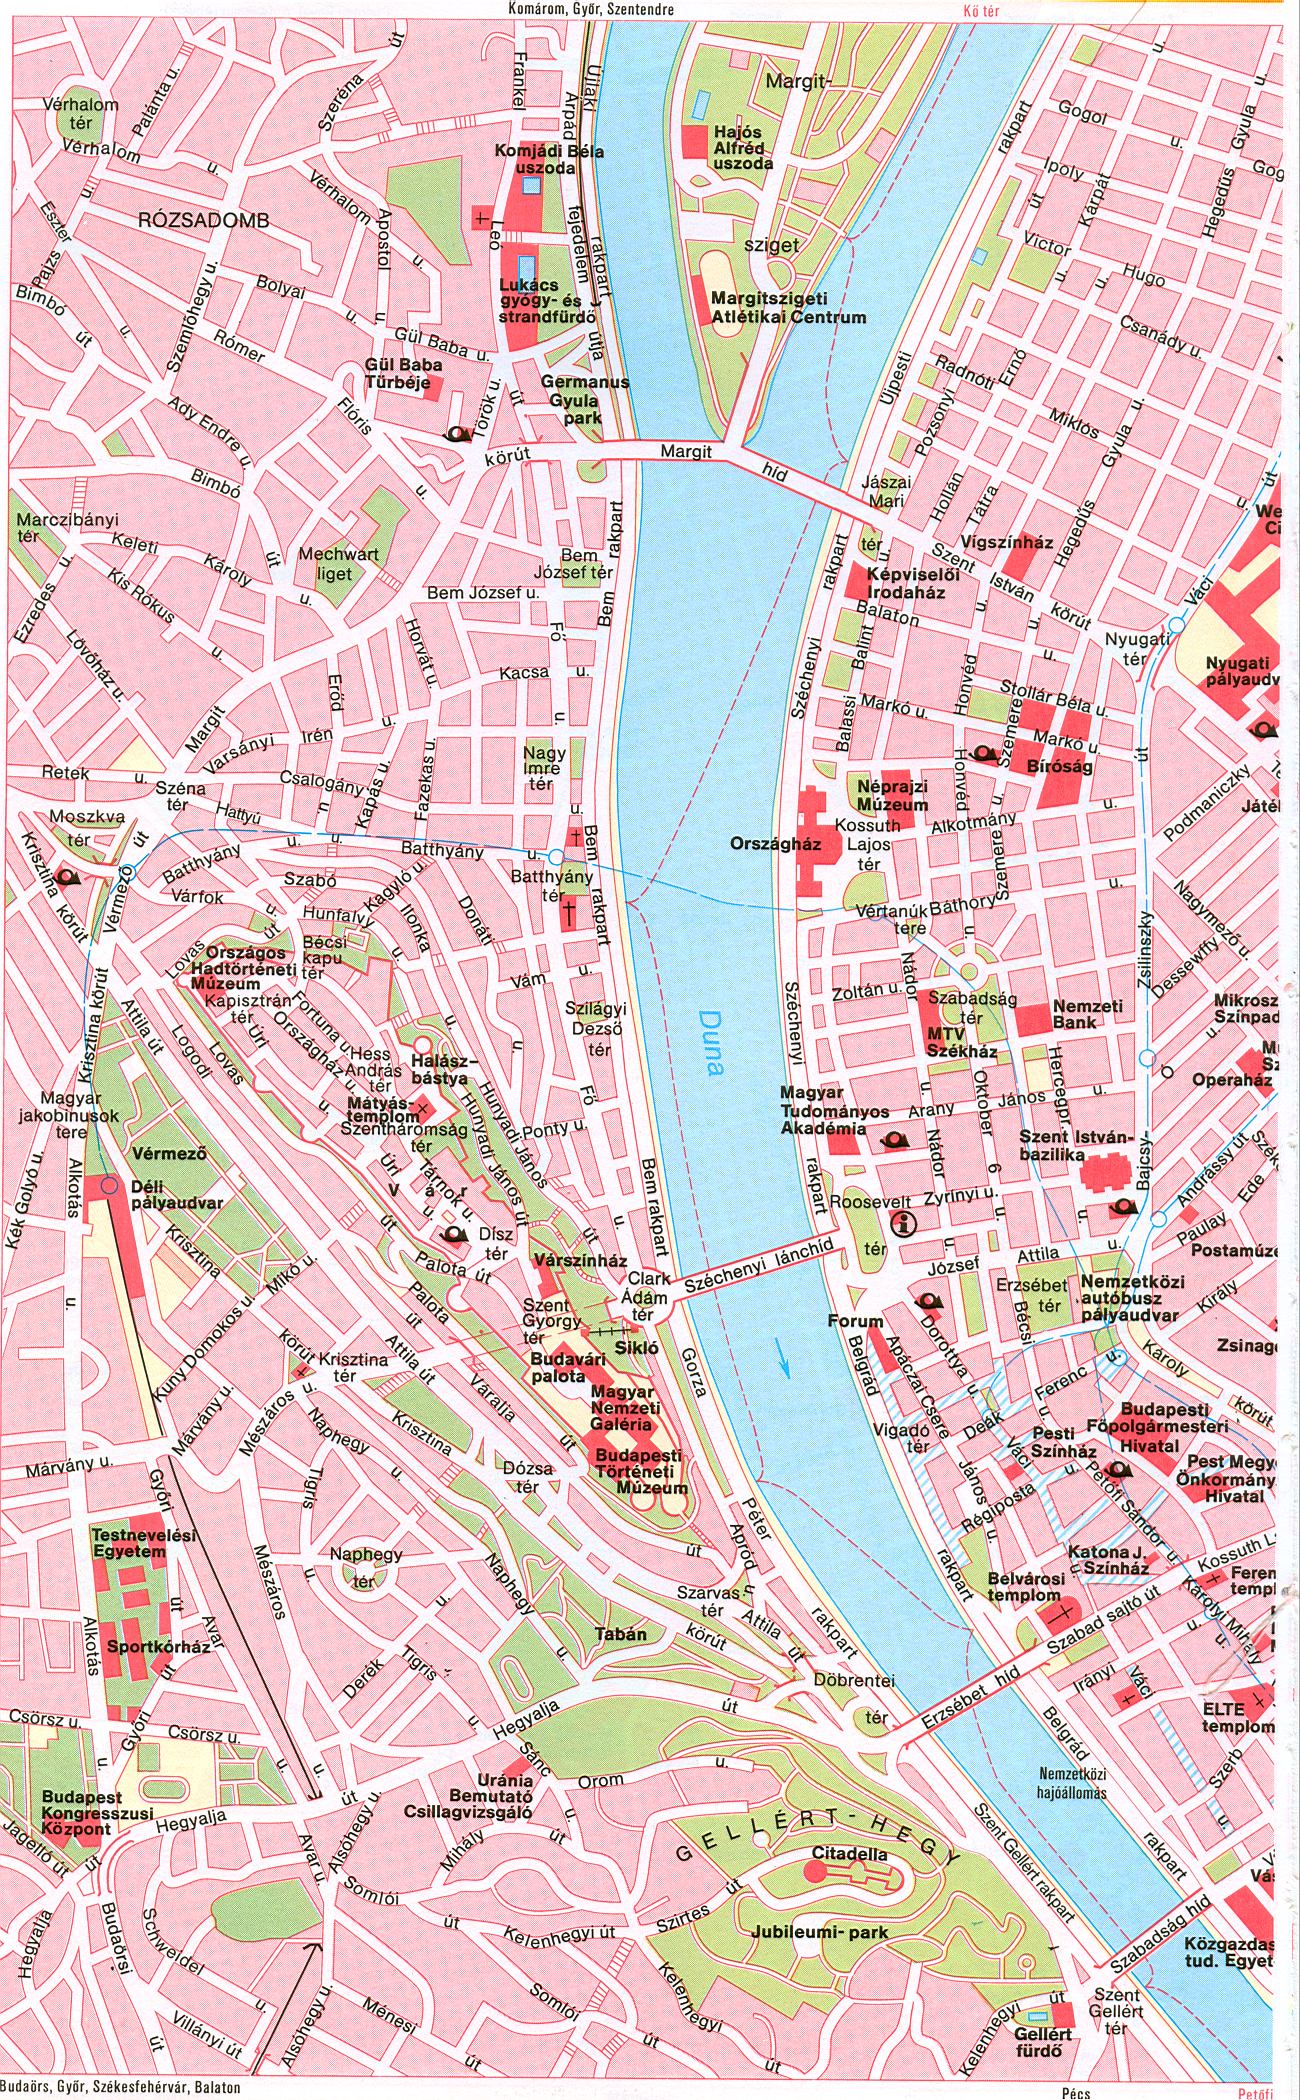 Венгрия. Карта Будапешта. Большой крупномасштабный план-карта столицы Венгрии города Будапешт.. Скачать бесплатно карту , A0 - 